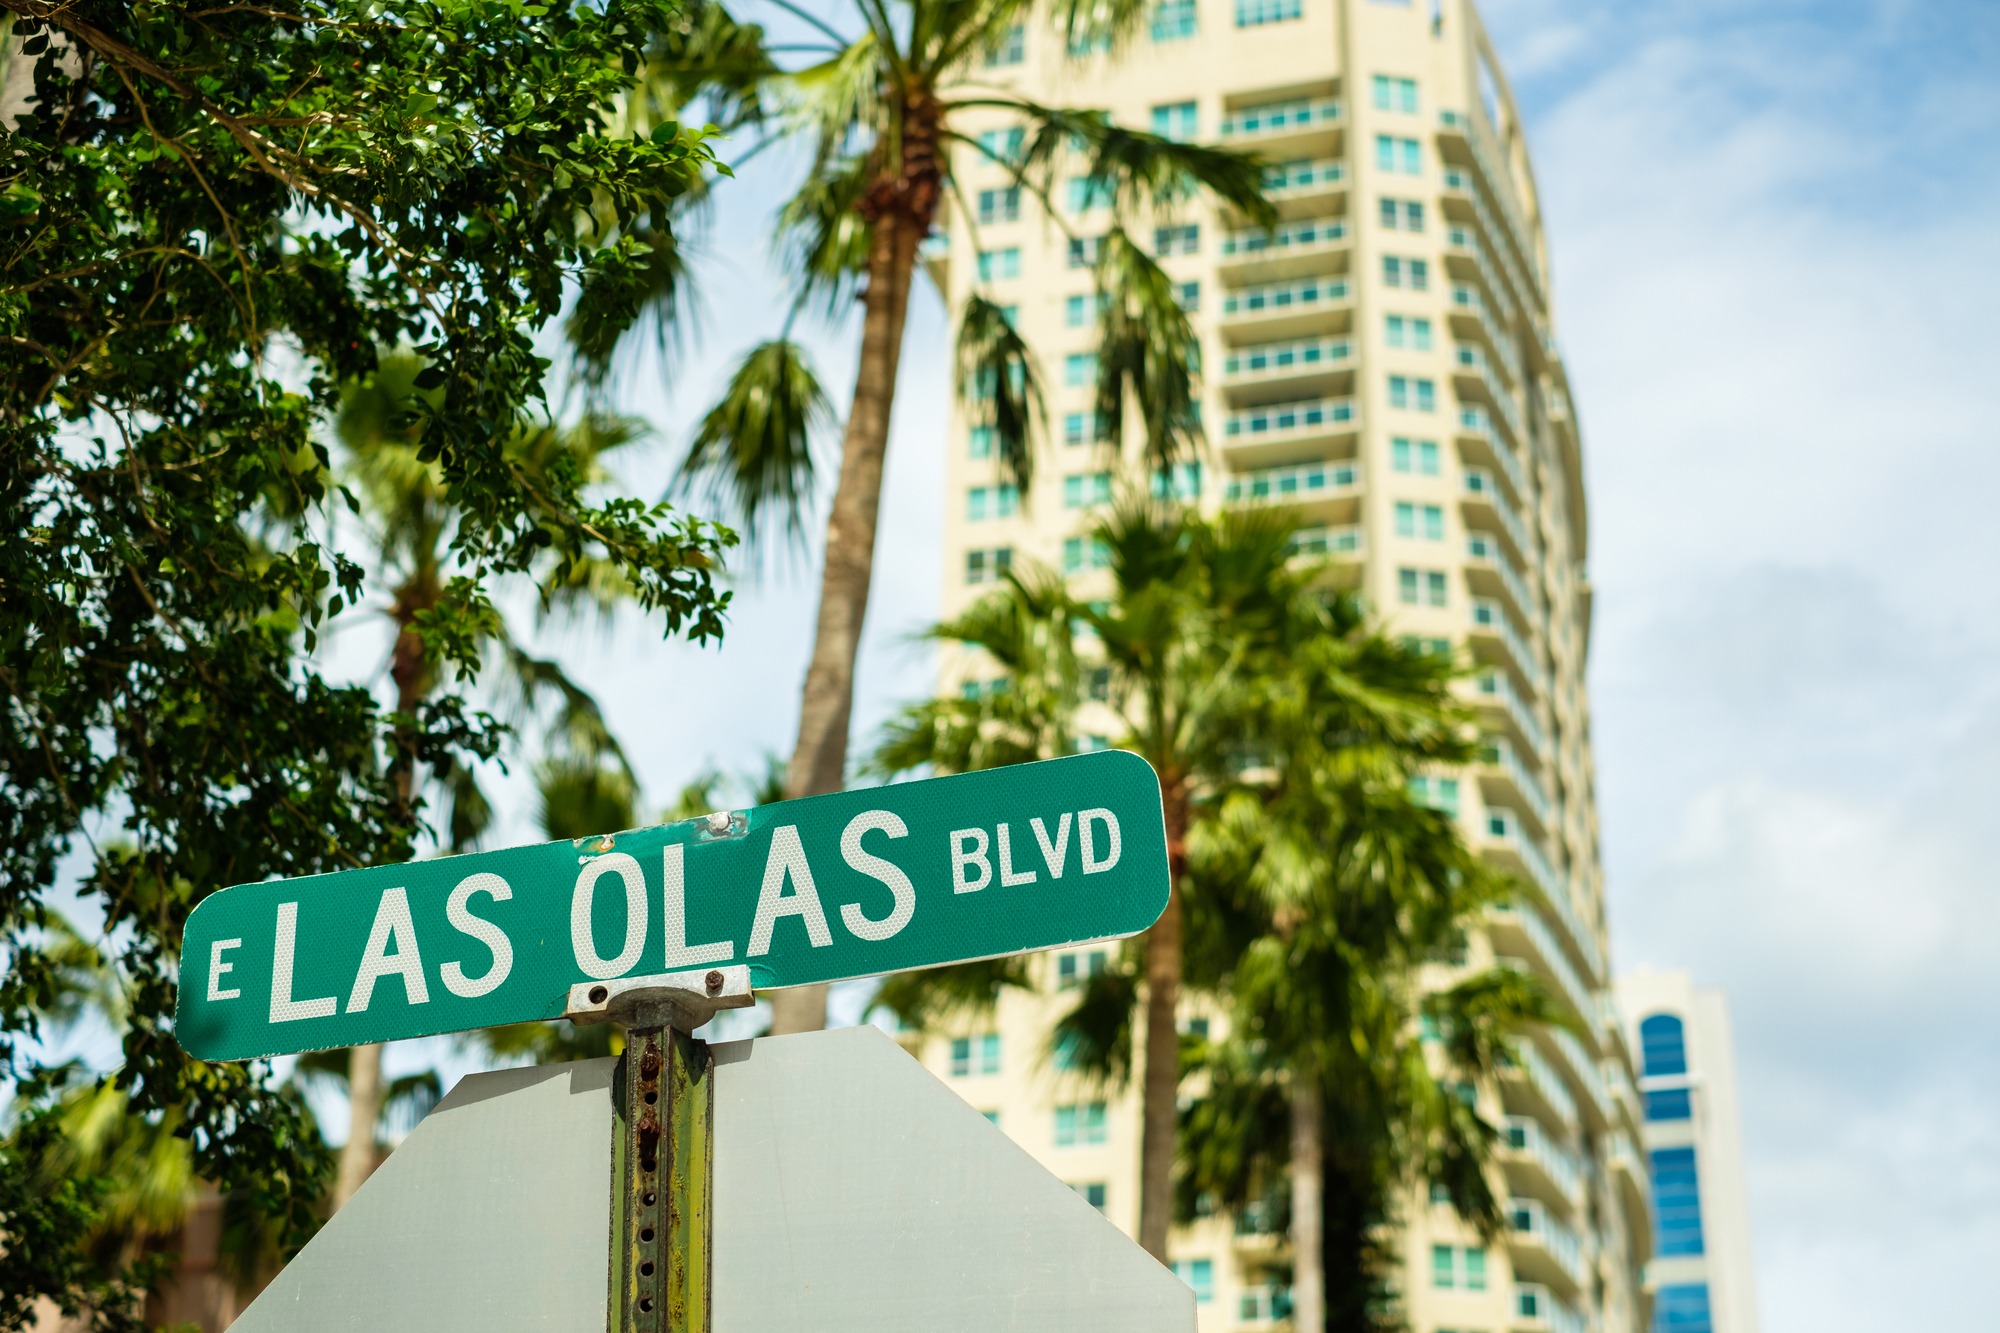 Las Olas Boulevard